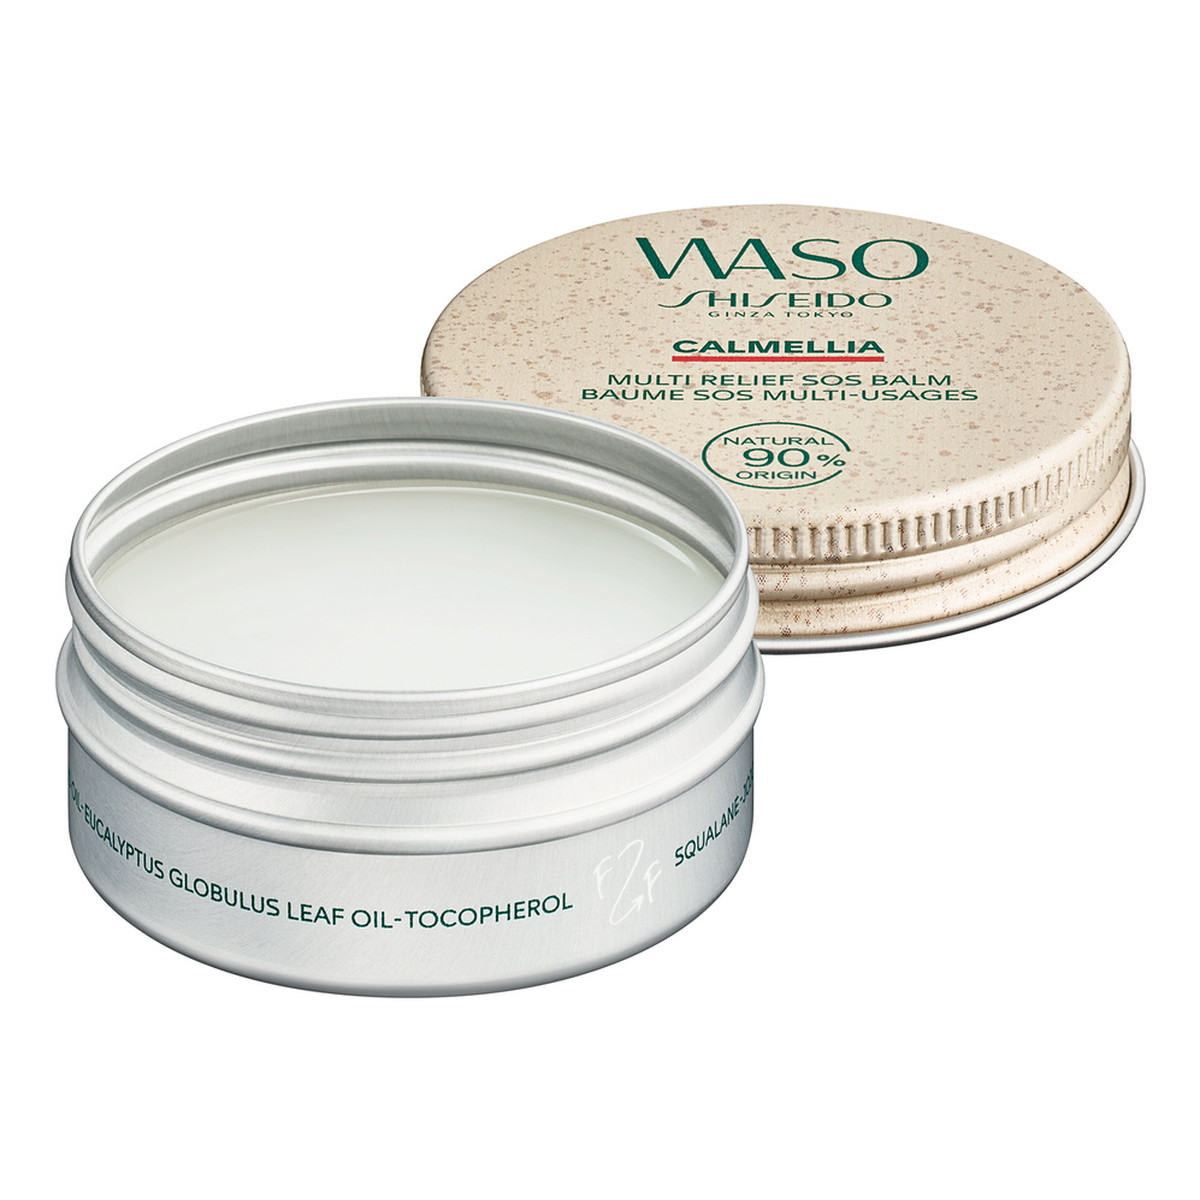 Shiseido Waso Calmellia Multi-Relief SOS Balm Balsam do twarzy 20g 20g